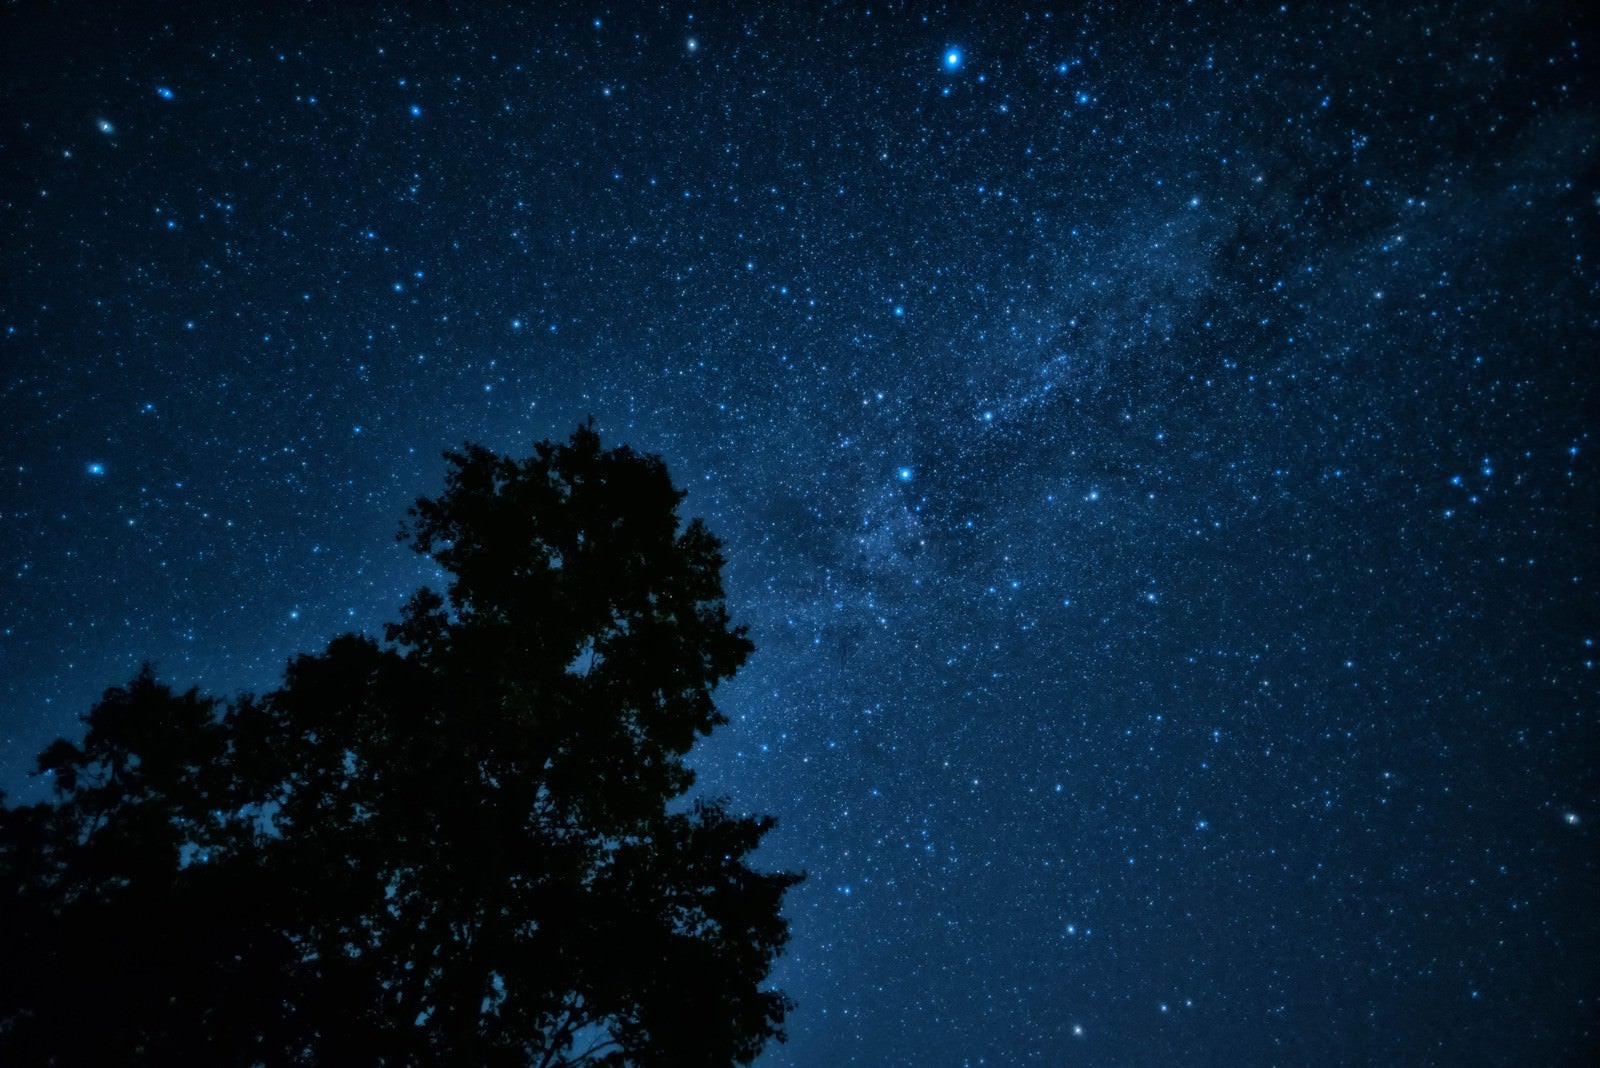 「星空に映る大木のシルエット」の写真